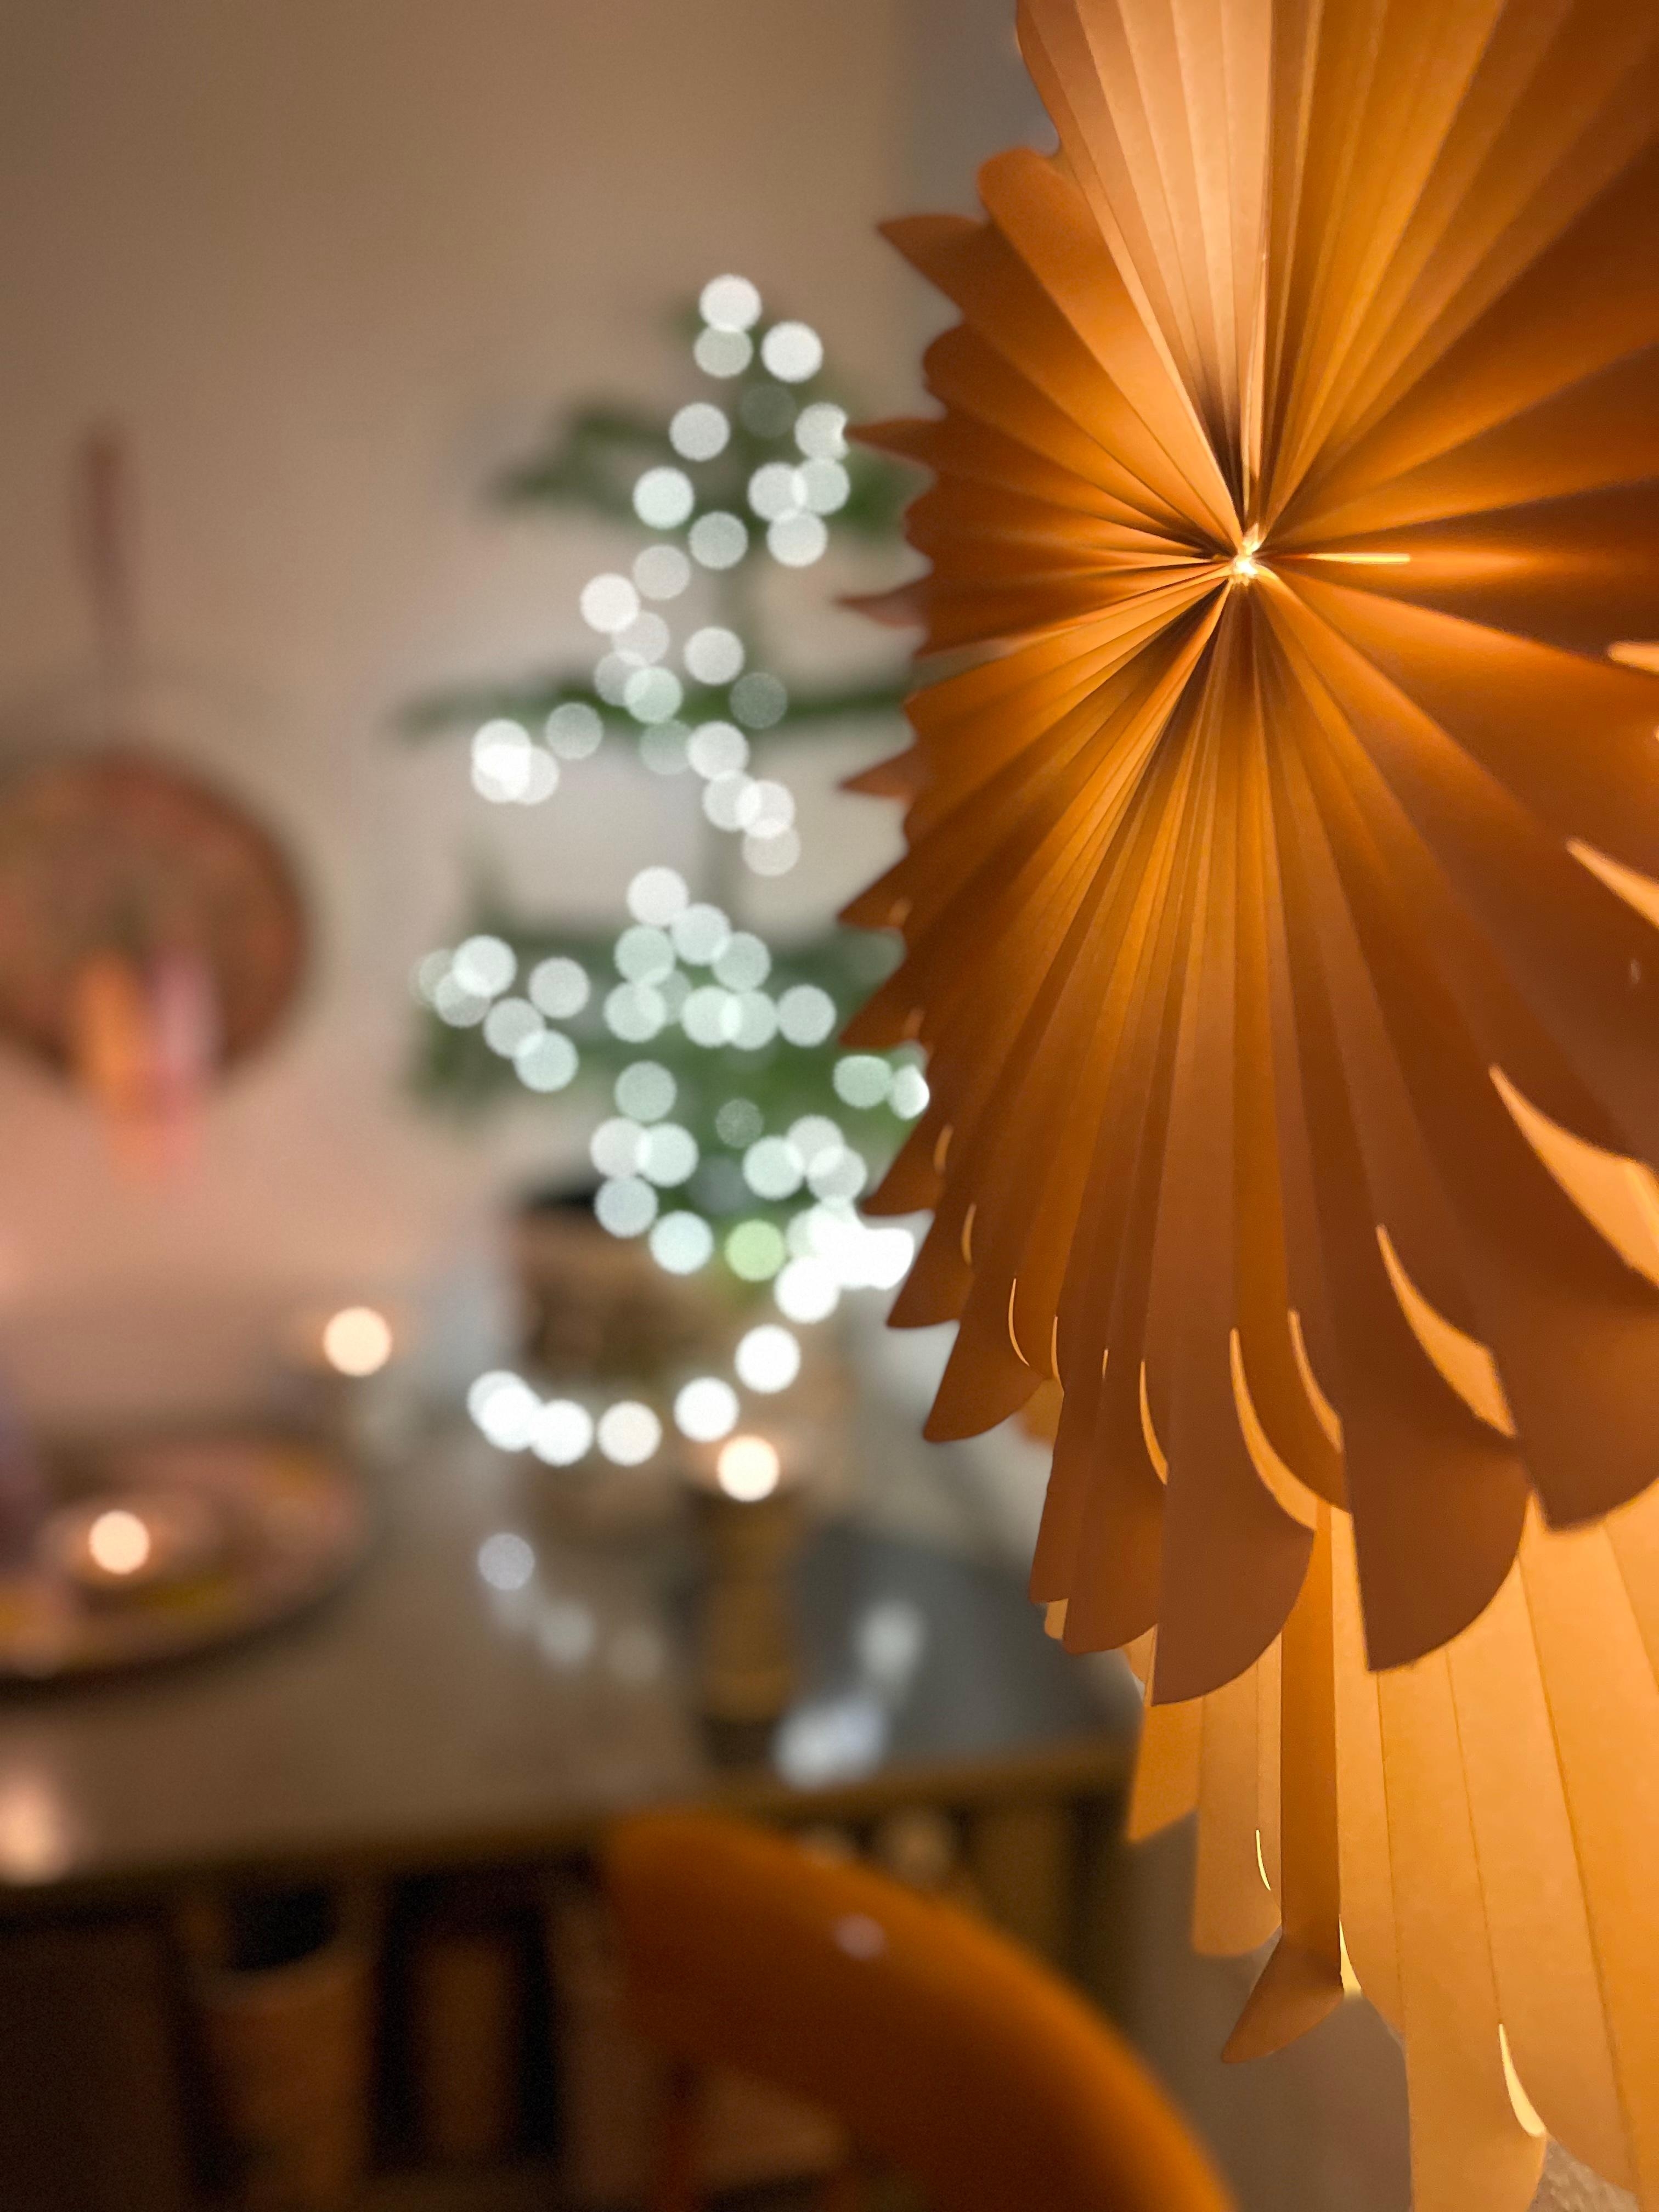 Meine #Weihnachtsdeko #Favoriten: #Lichterketten, #Sterne und #Kerzen. Hier in Kombination mit #Zimmertanne